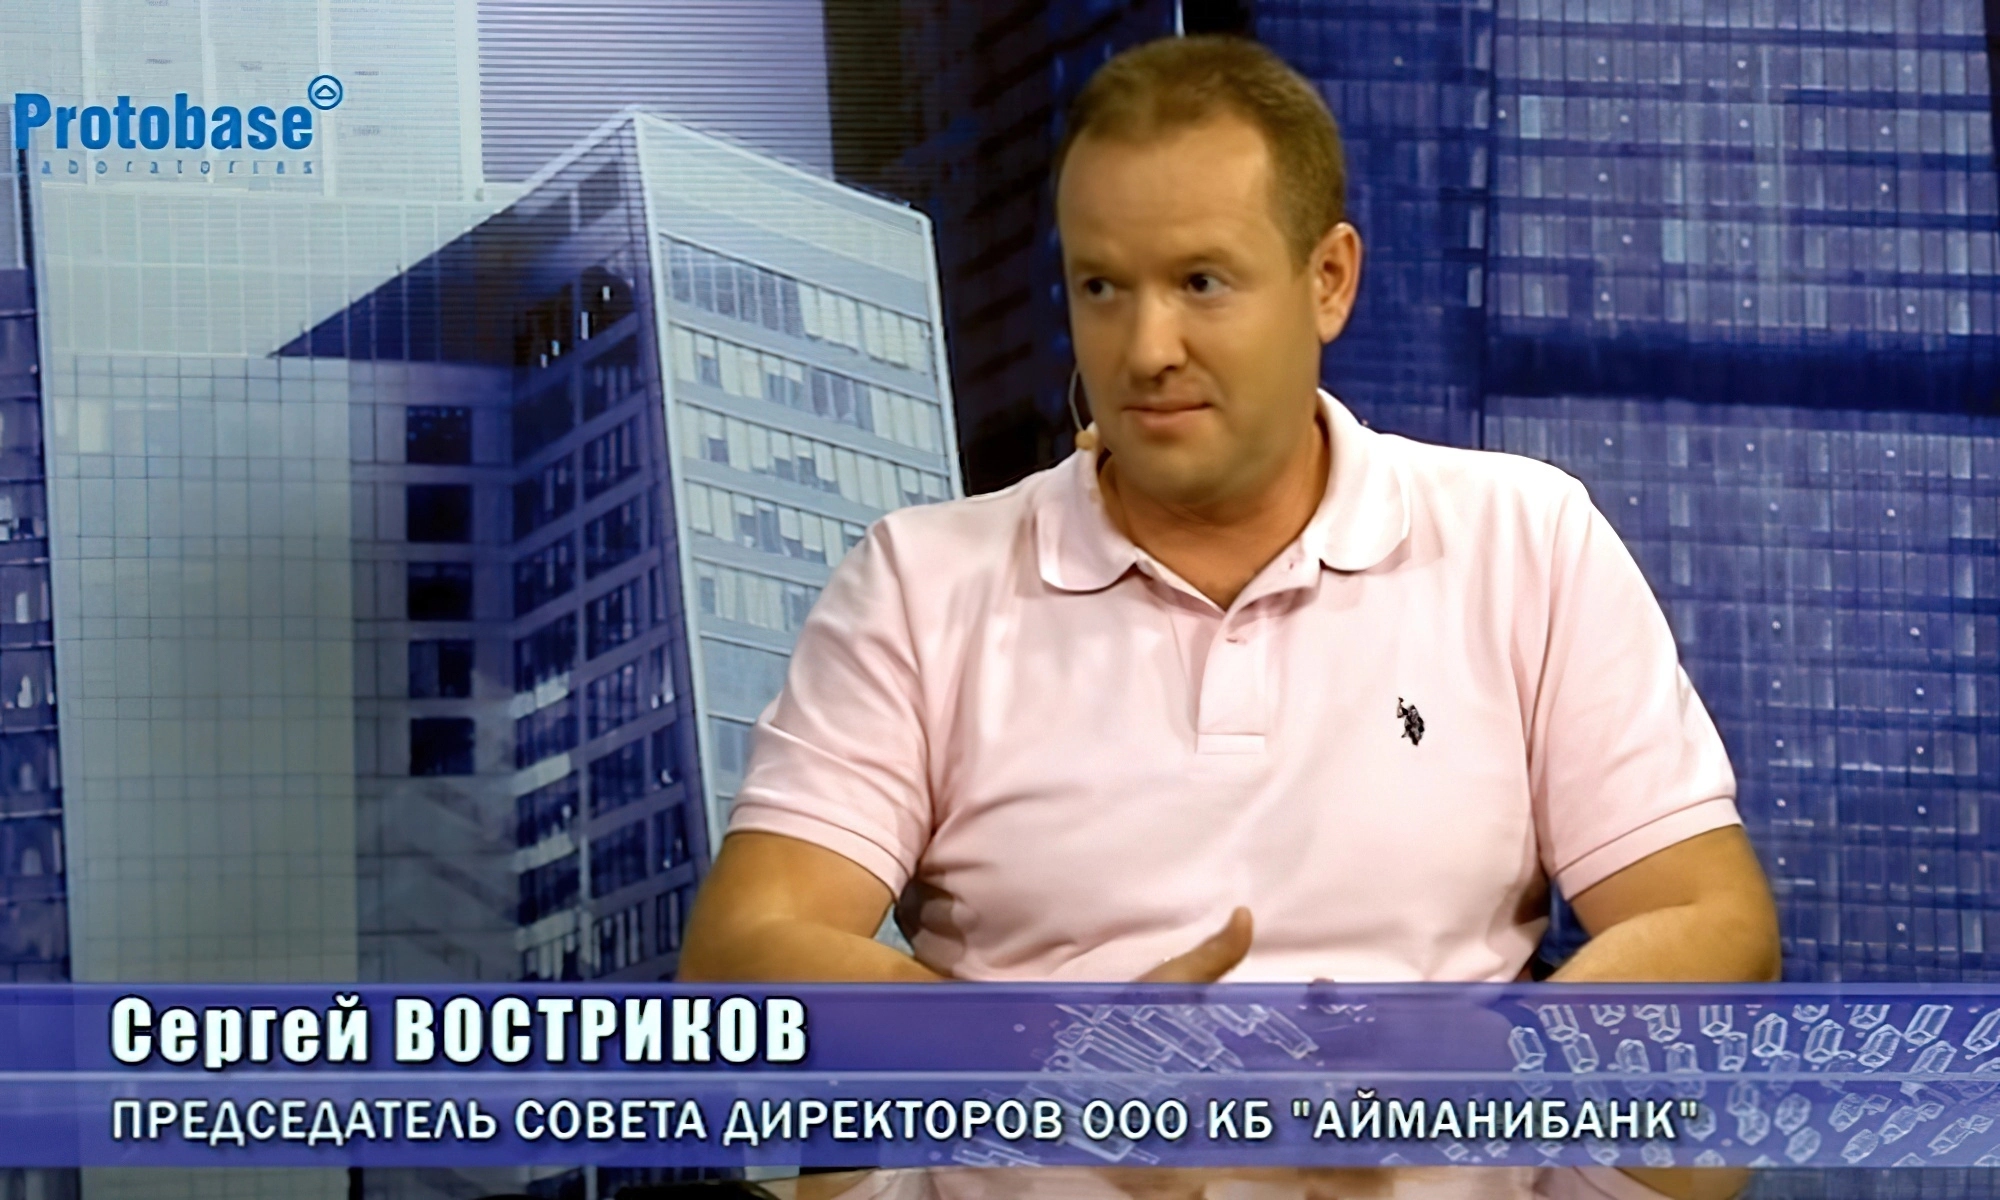 Сергей Востриков - председатель совета директоров «АйМаниБанка»